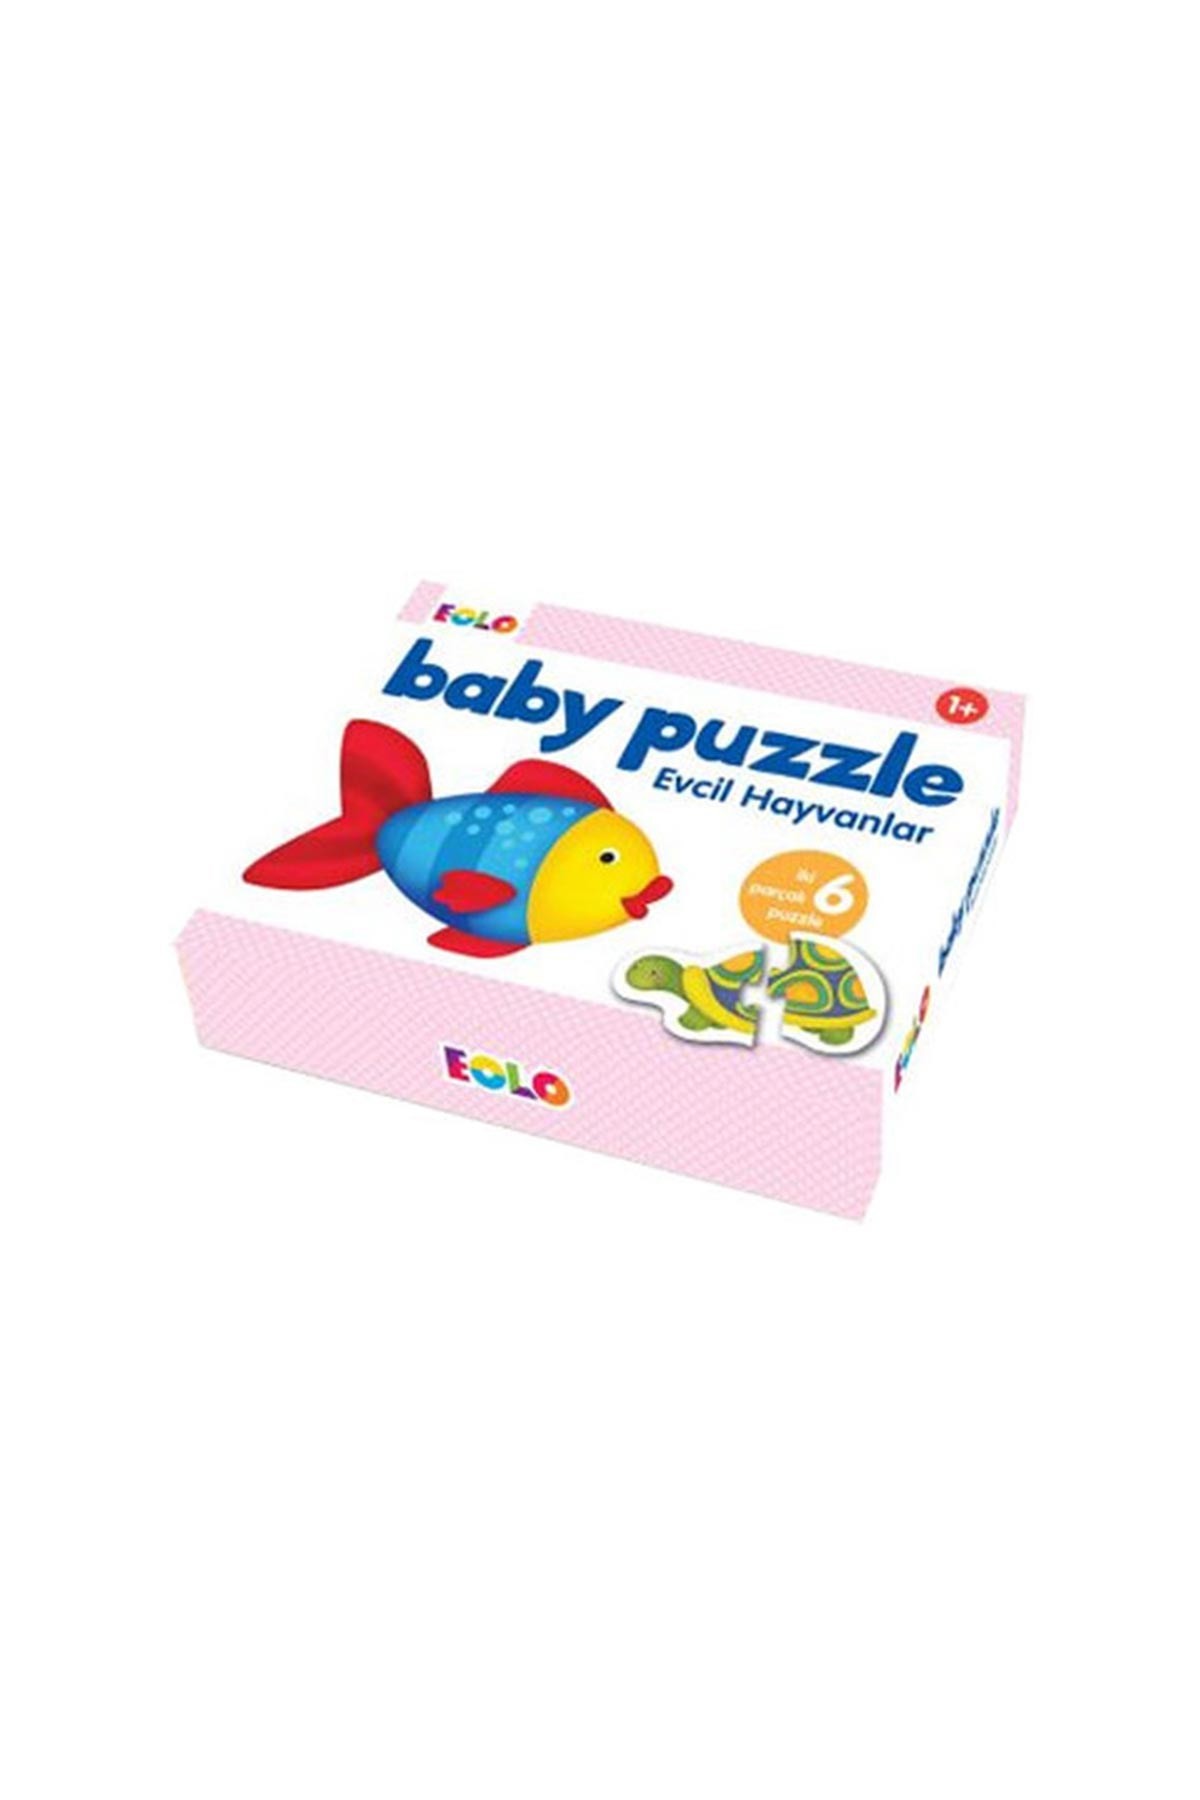 Eolo Baby Puzzle Evcil Hayvanlar